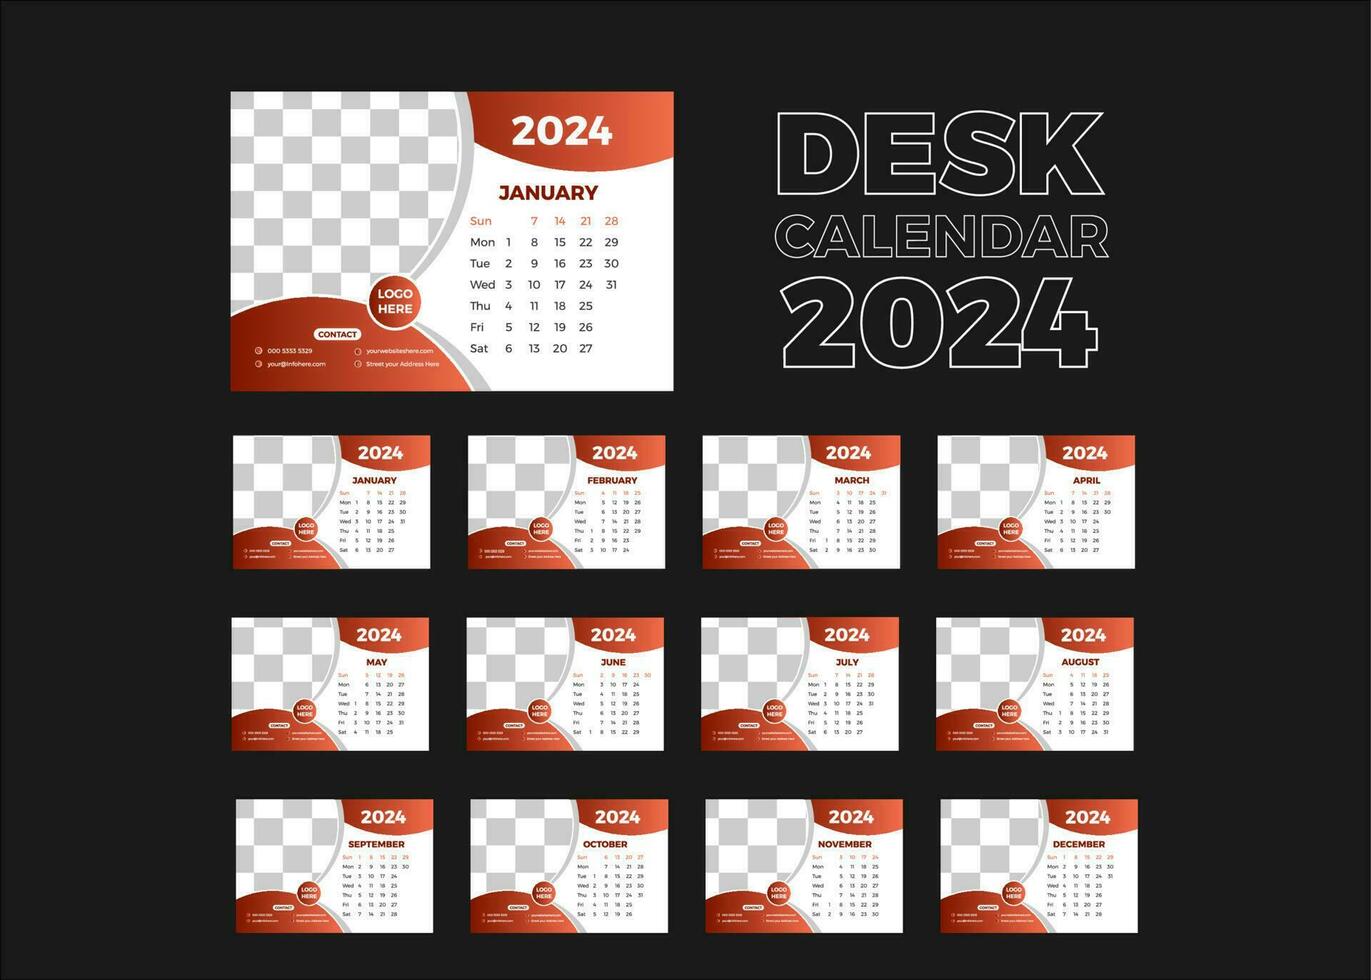 Desk calendar design 2024 vector